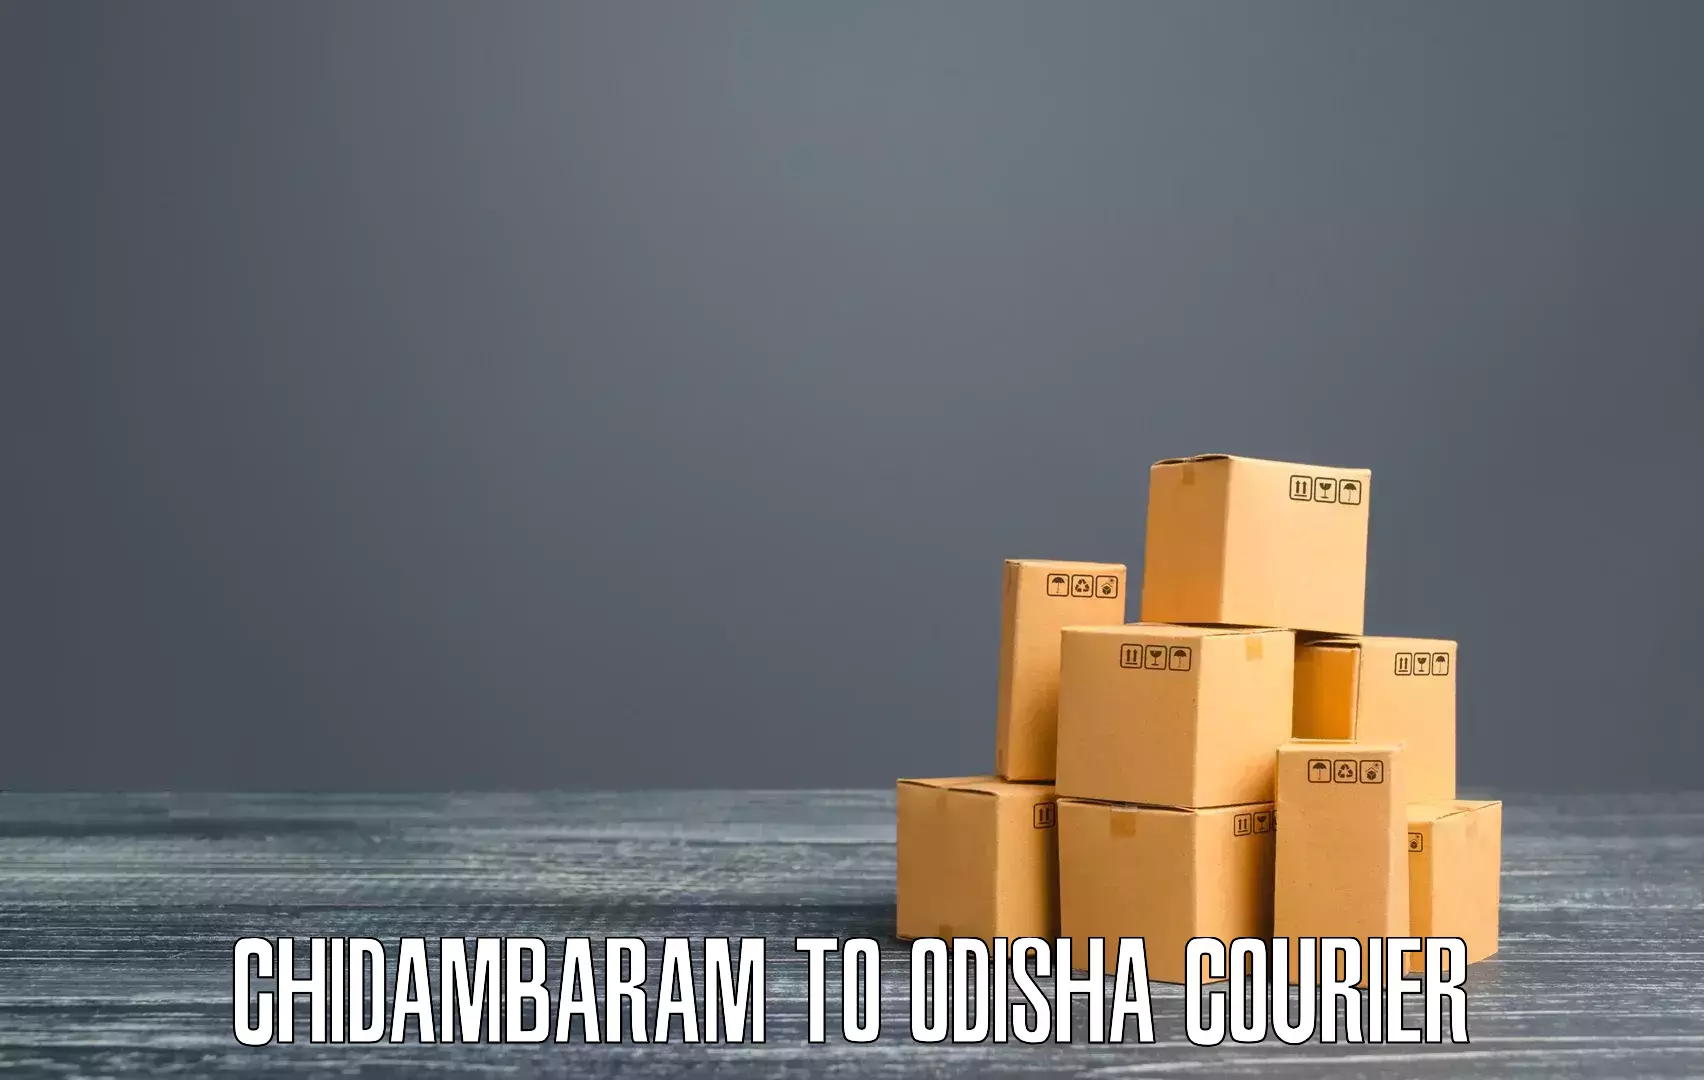 Round-the-clock parcel delivery Chidambaram to Malkangiri